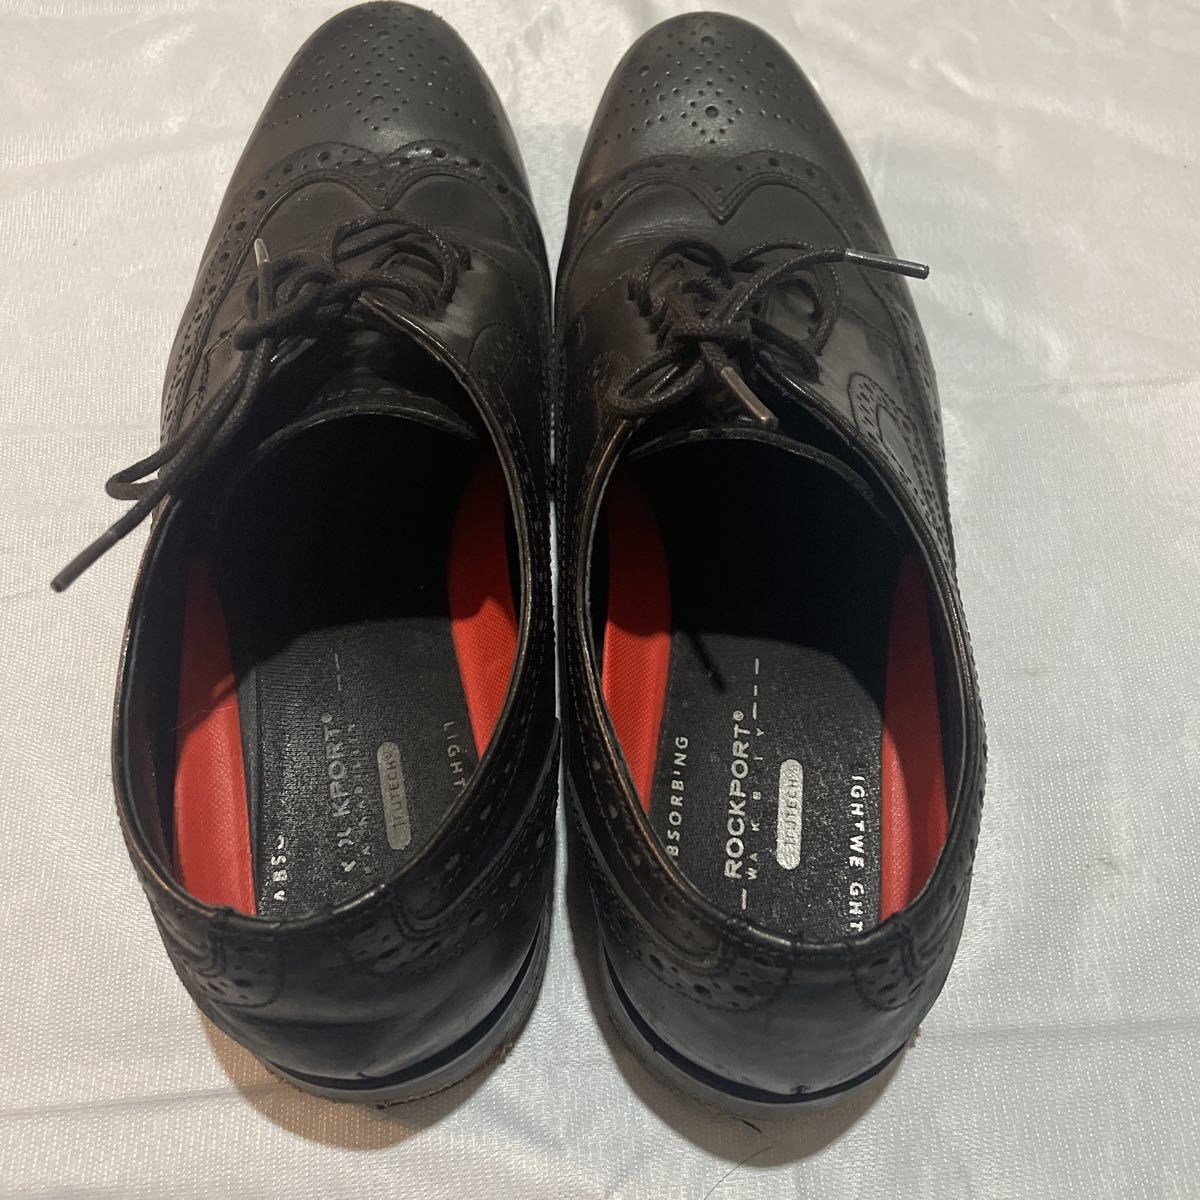 ROCKPORT блокировка порт Wing chip бизнес обувь кожа обувь черный мужской 28cm